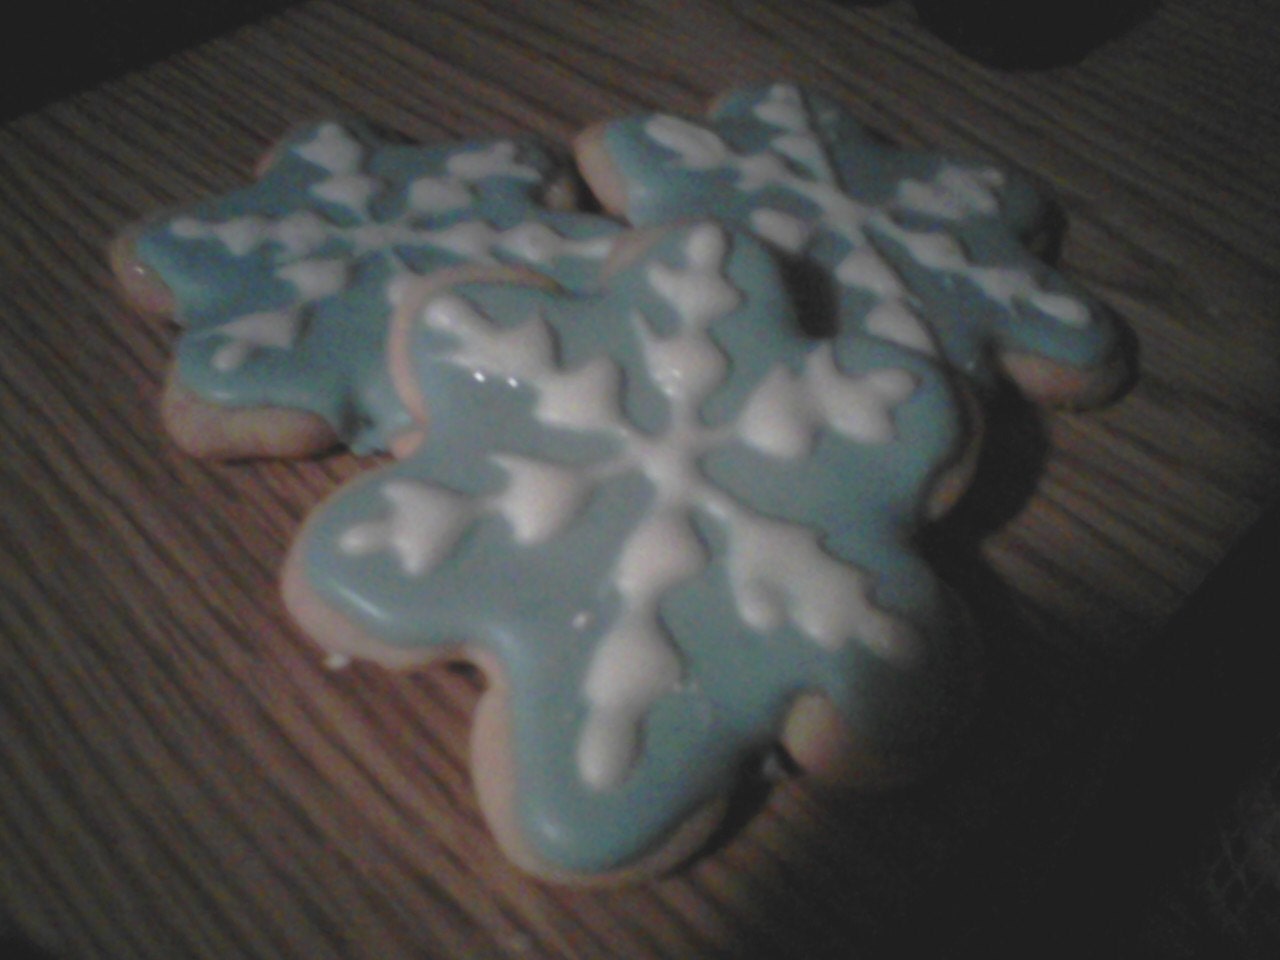 Snowflake Sugar Cookie With Royal Icing - MommyandMeWorkshop